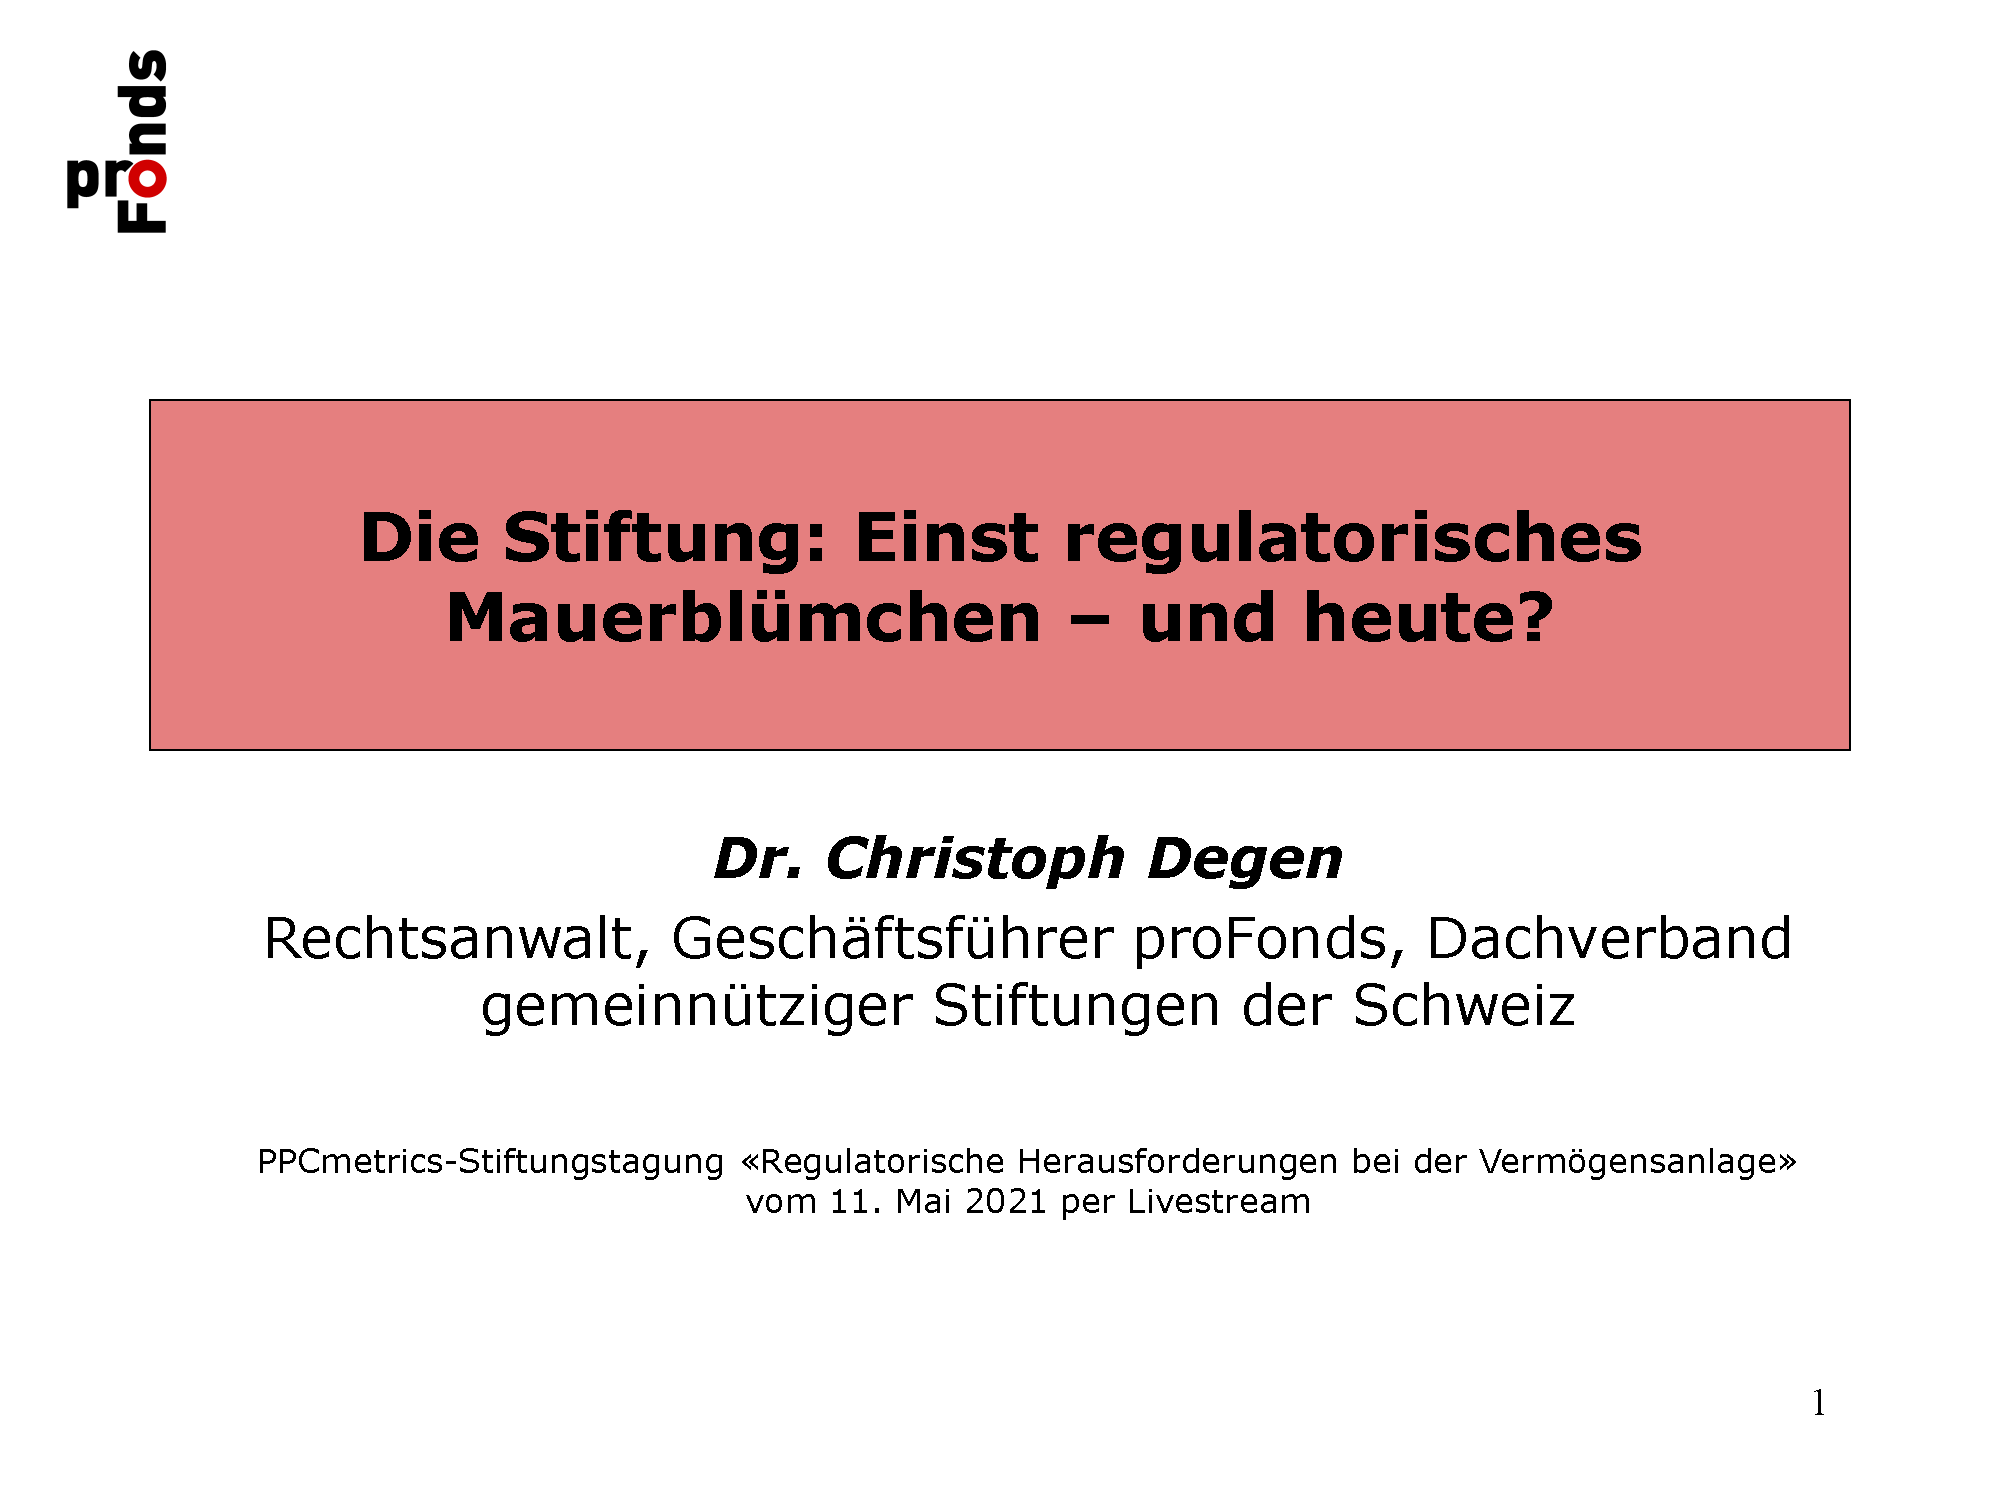 2021-05-11_Die Stiftung - Einst regulatorisches Mauerblümchen und heute_Dr. Christoph Degen_Page_01.png